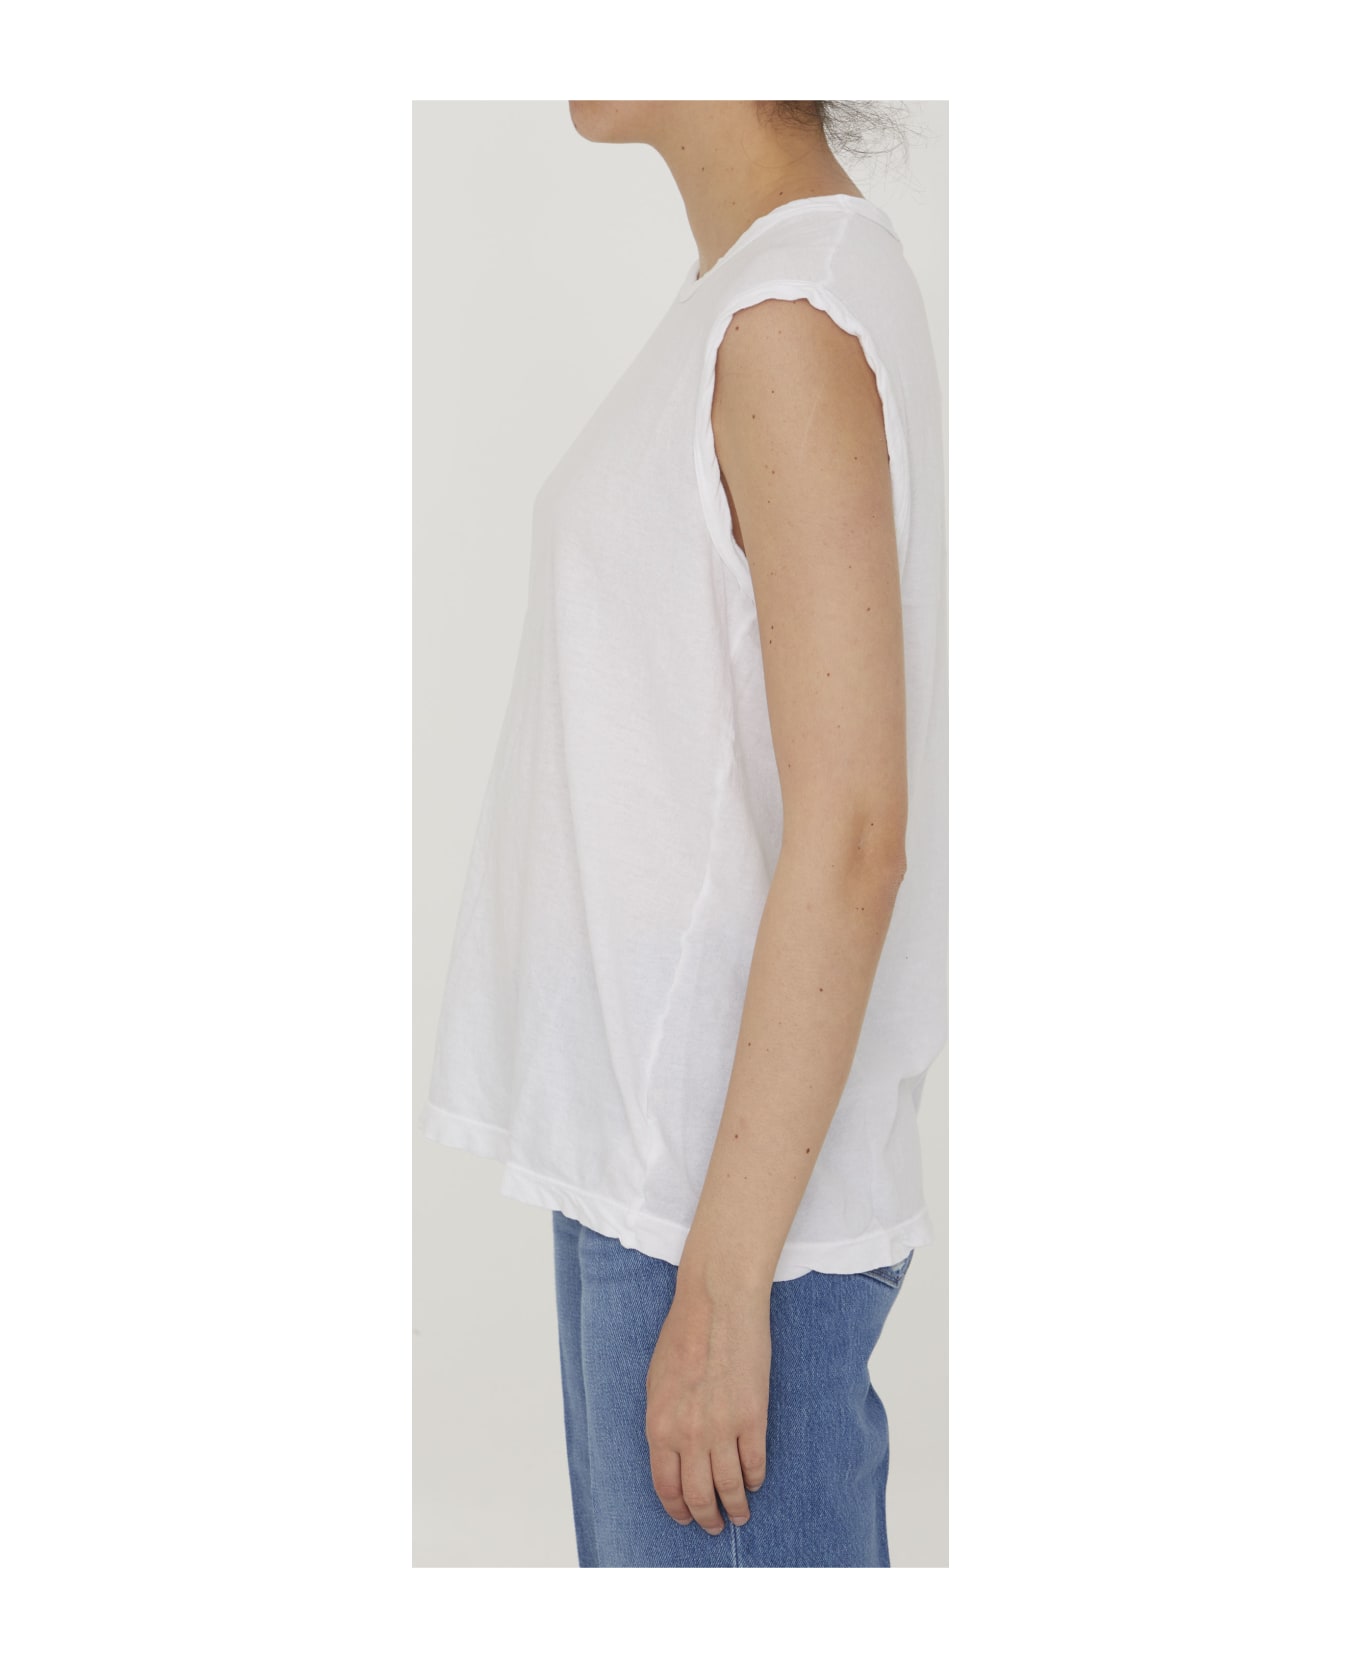 James Perse Cotton Sleeveless T-shirt - WHITE